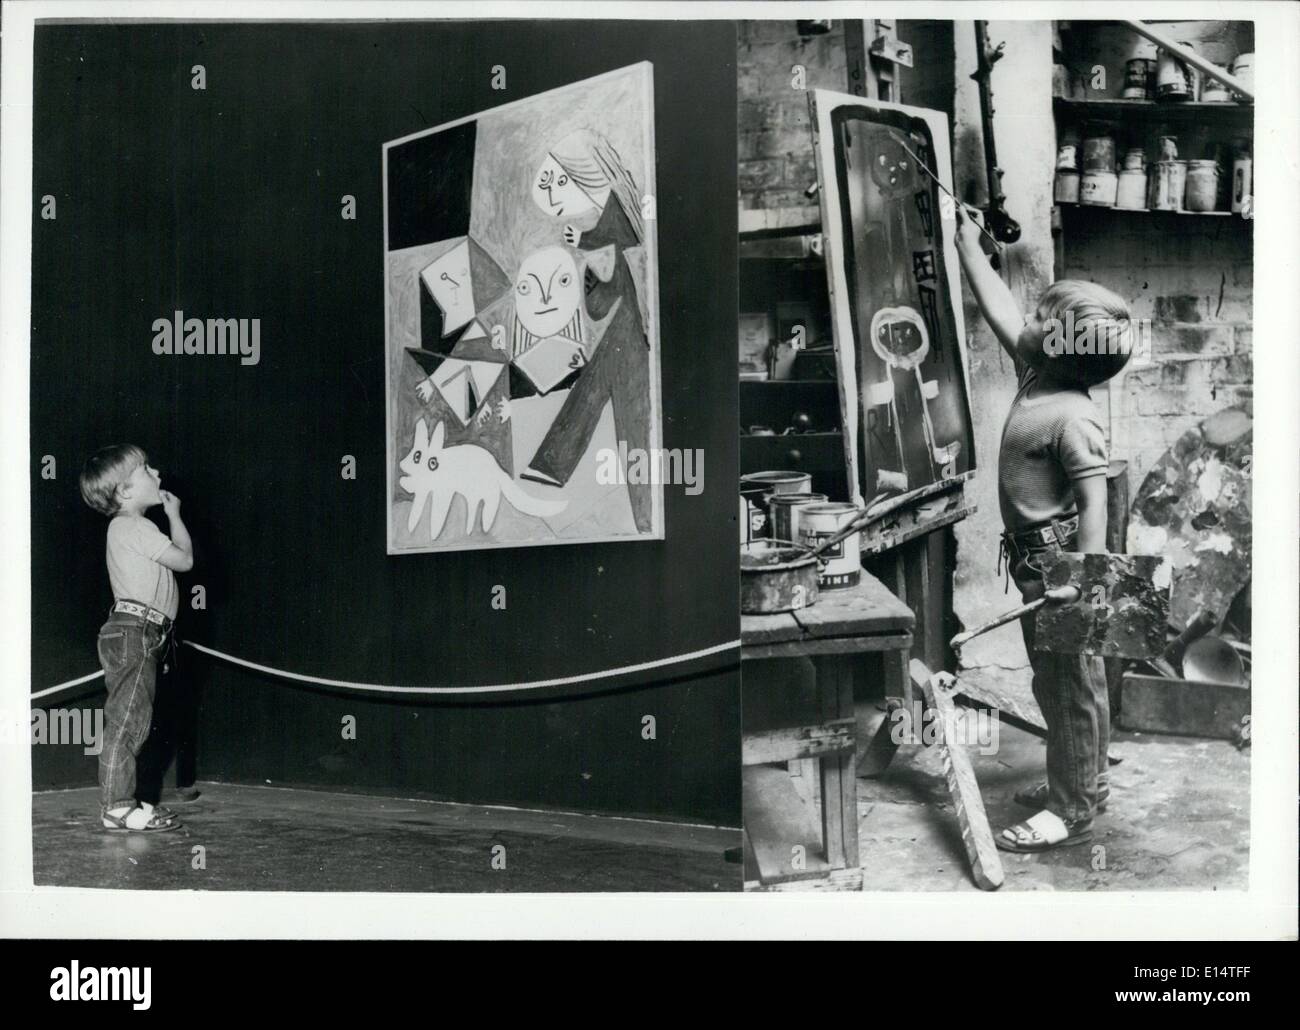 18 avril 2012 - l'artiste de l'enfant et Picasso. A Londres : il y a deux ans, M. Romany de Villiers, trois ans, vendait pour cinq guinéas sa première peinture à l'exposition d'art de l'Embankment de Londres et reçut une publicité mondiale. Il a été appelé le deuxième pcasso. Et maintenant, un homme de cinq ans plus expérimenté est tout à fait au sujet de l'exposition Picasso à la Tate Gallery de Londres et il a juste dû visiter l'endroit et de prendre quelques idées sur Cubiam et la période bleue. Il était dans son monde de rêve au Tate Banque D'Images